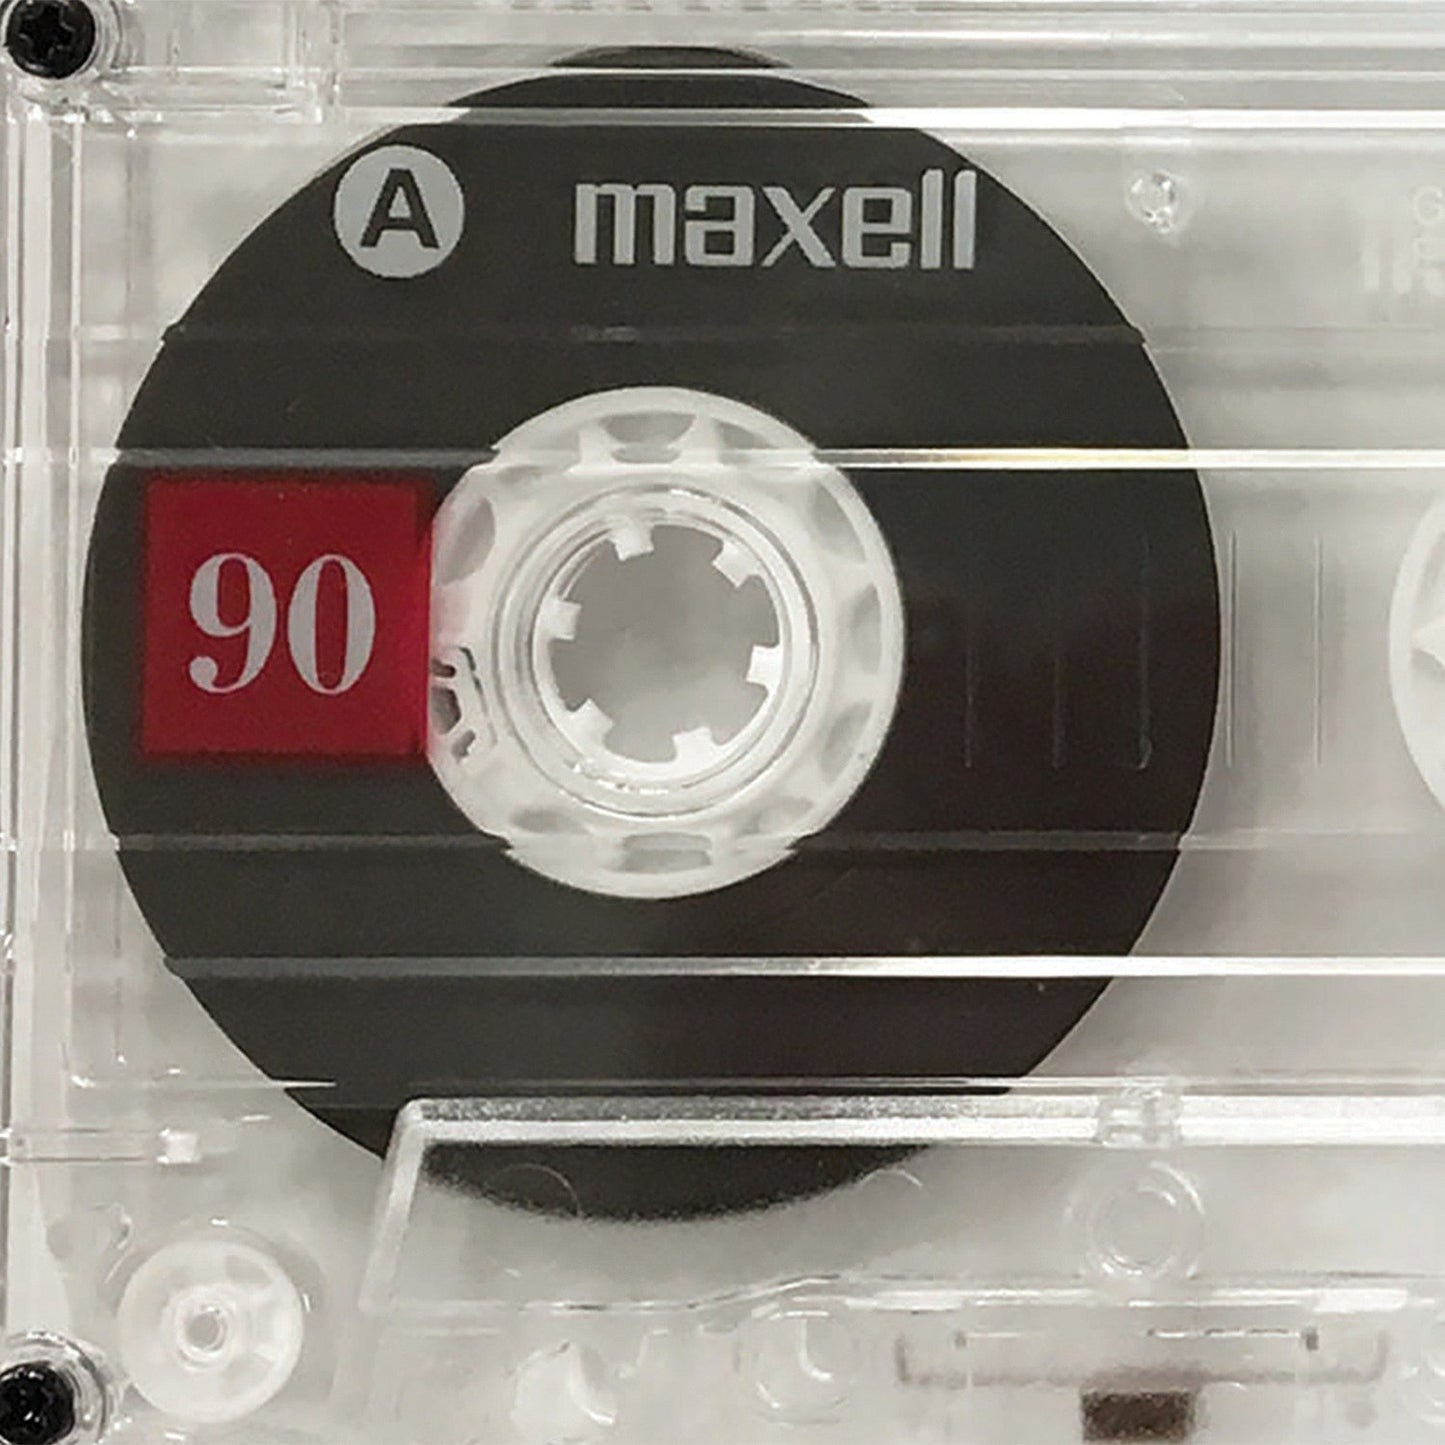 MAXELL 108562 Ur90 5Pk Cassette Tapes